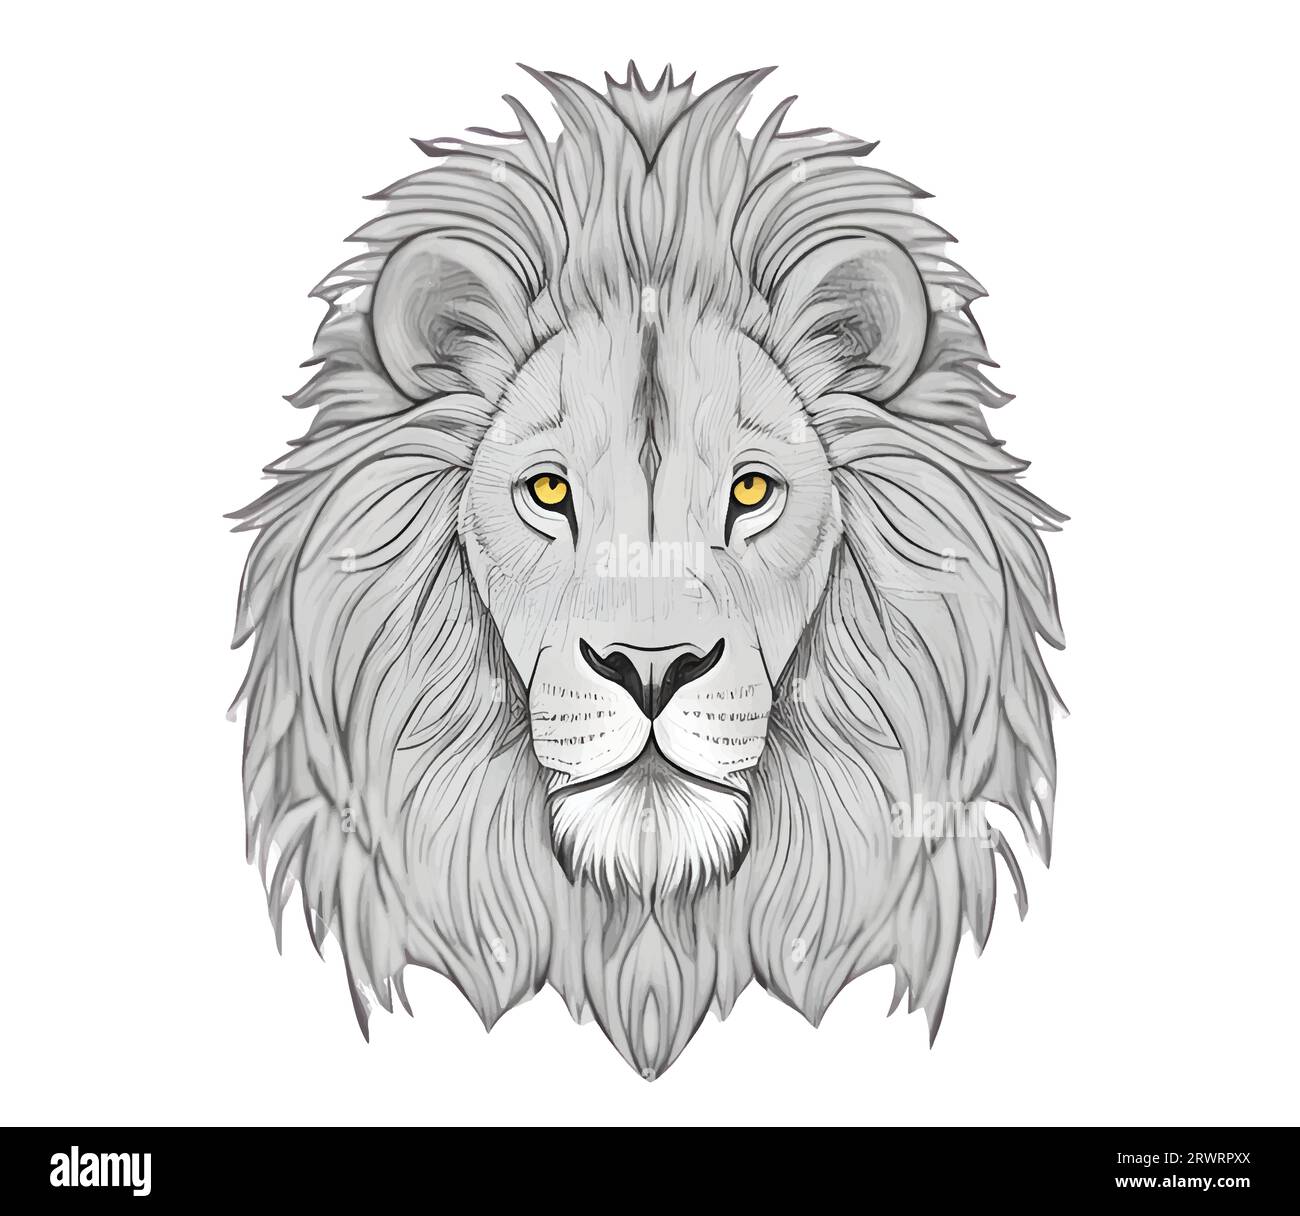 Esquisse de visage de lion dans le style doodle illustration vectorielle. Illustration de Vecteur